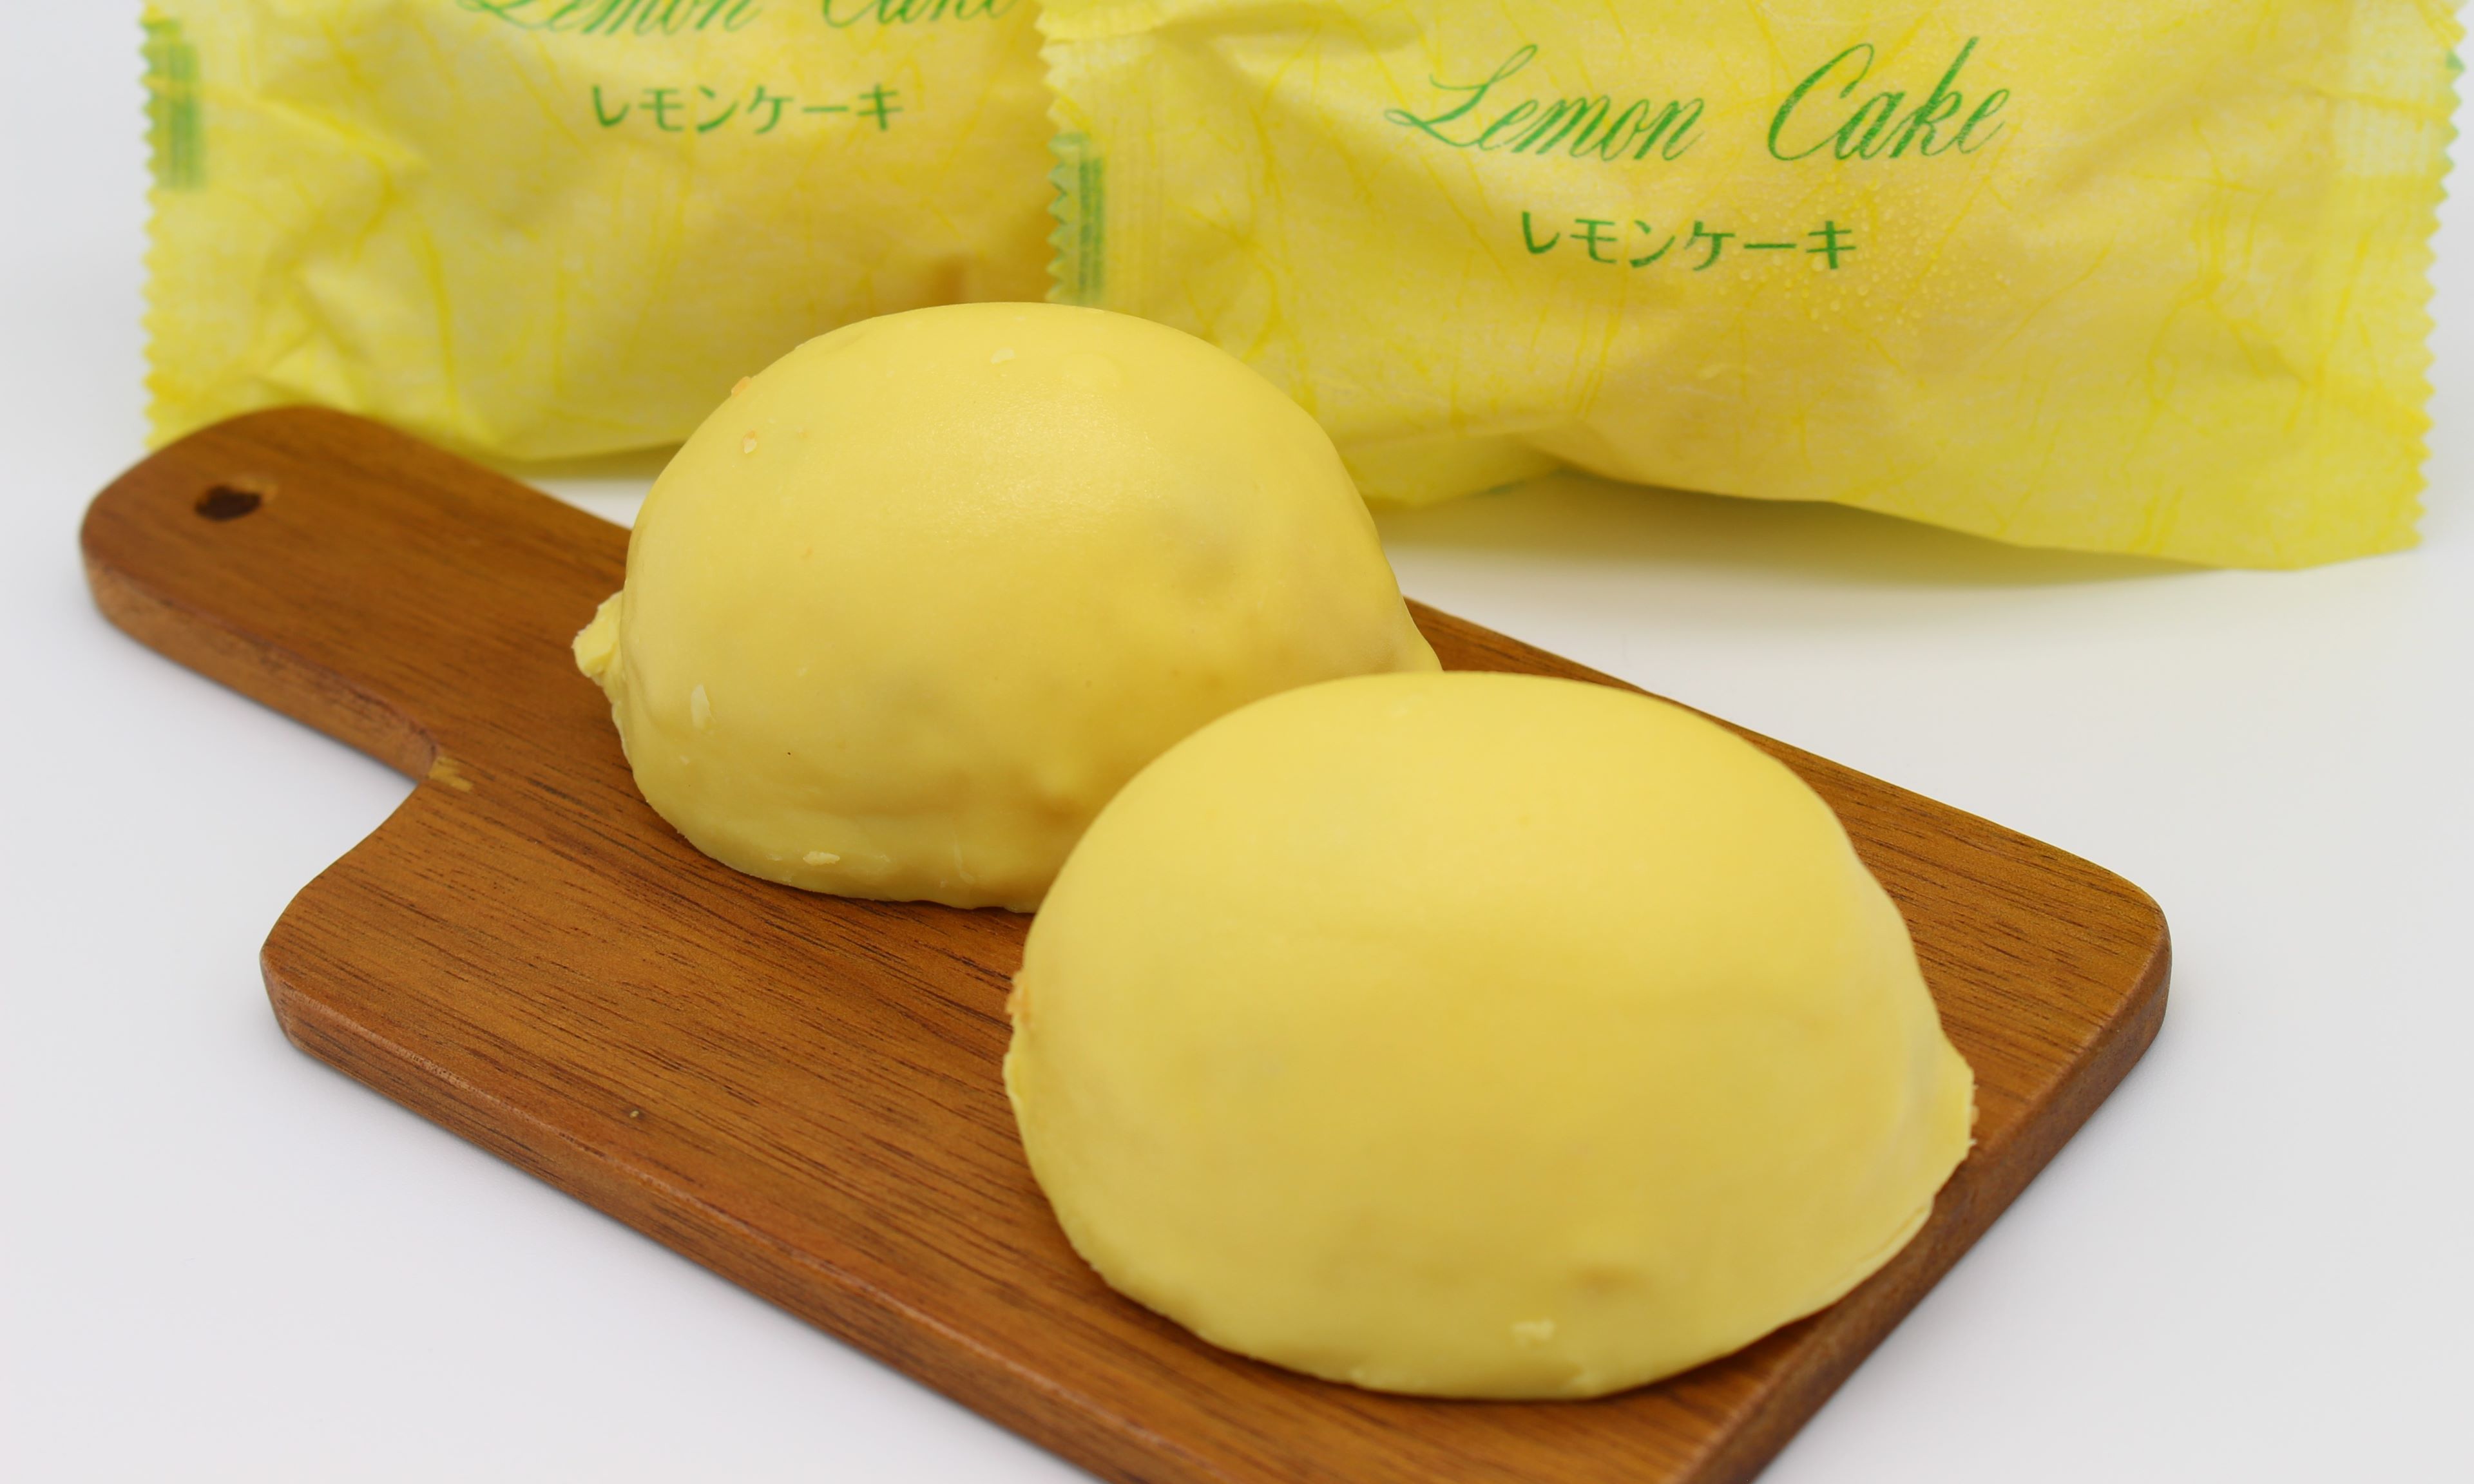 レモンケーキ10個入 ニシムラファミリー洋菓子...の紹介画像2